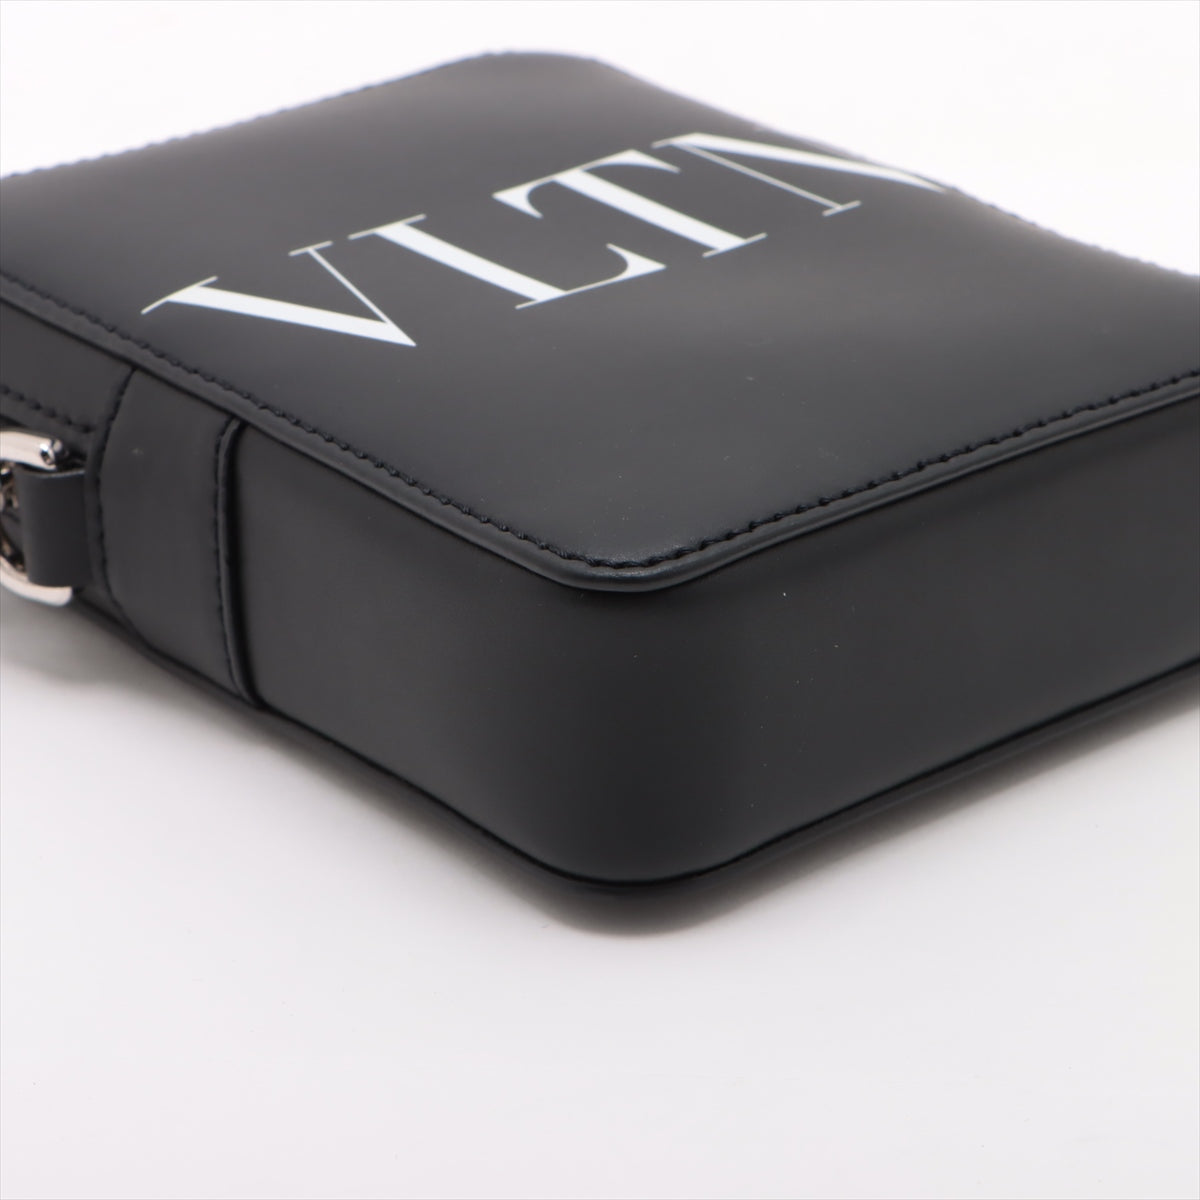 Valentino VLTN Leather Shoulder Bag Black